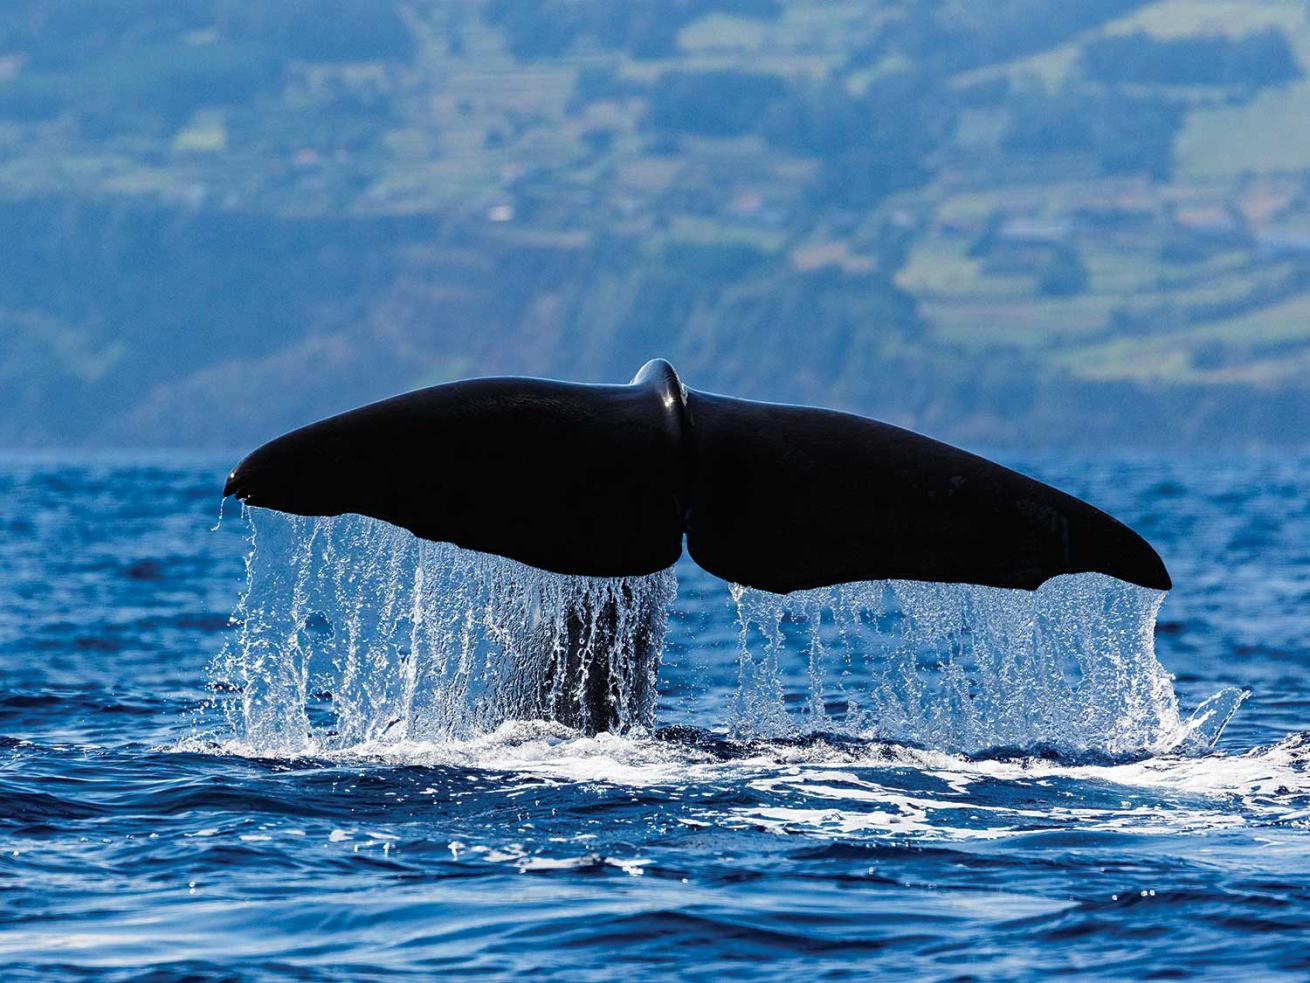 sperm whale dives deep